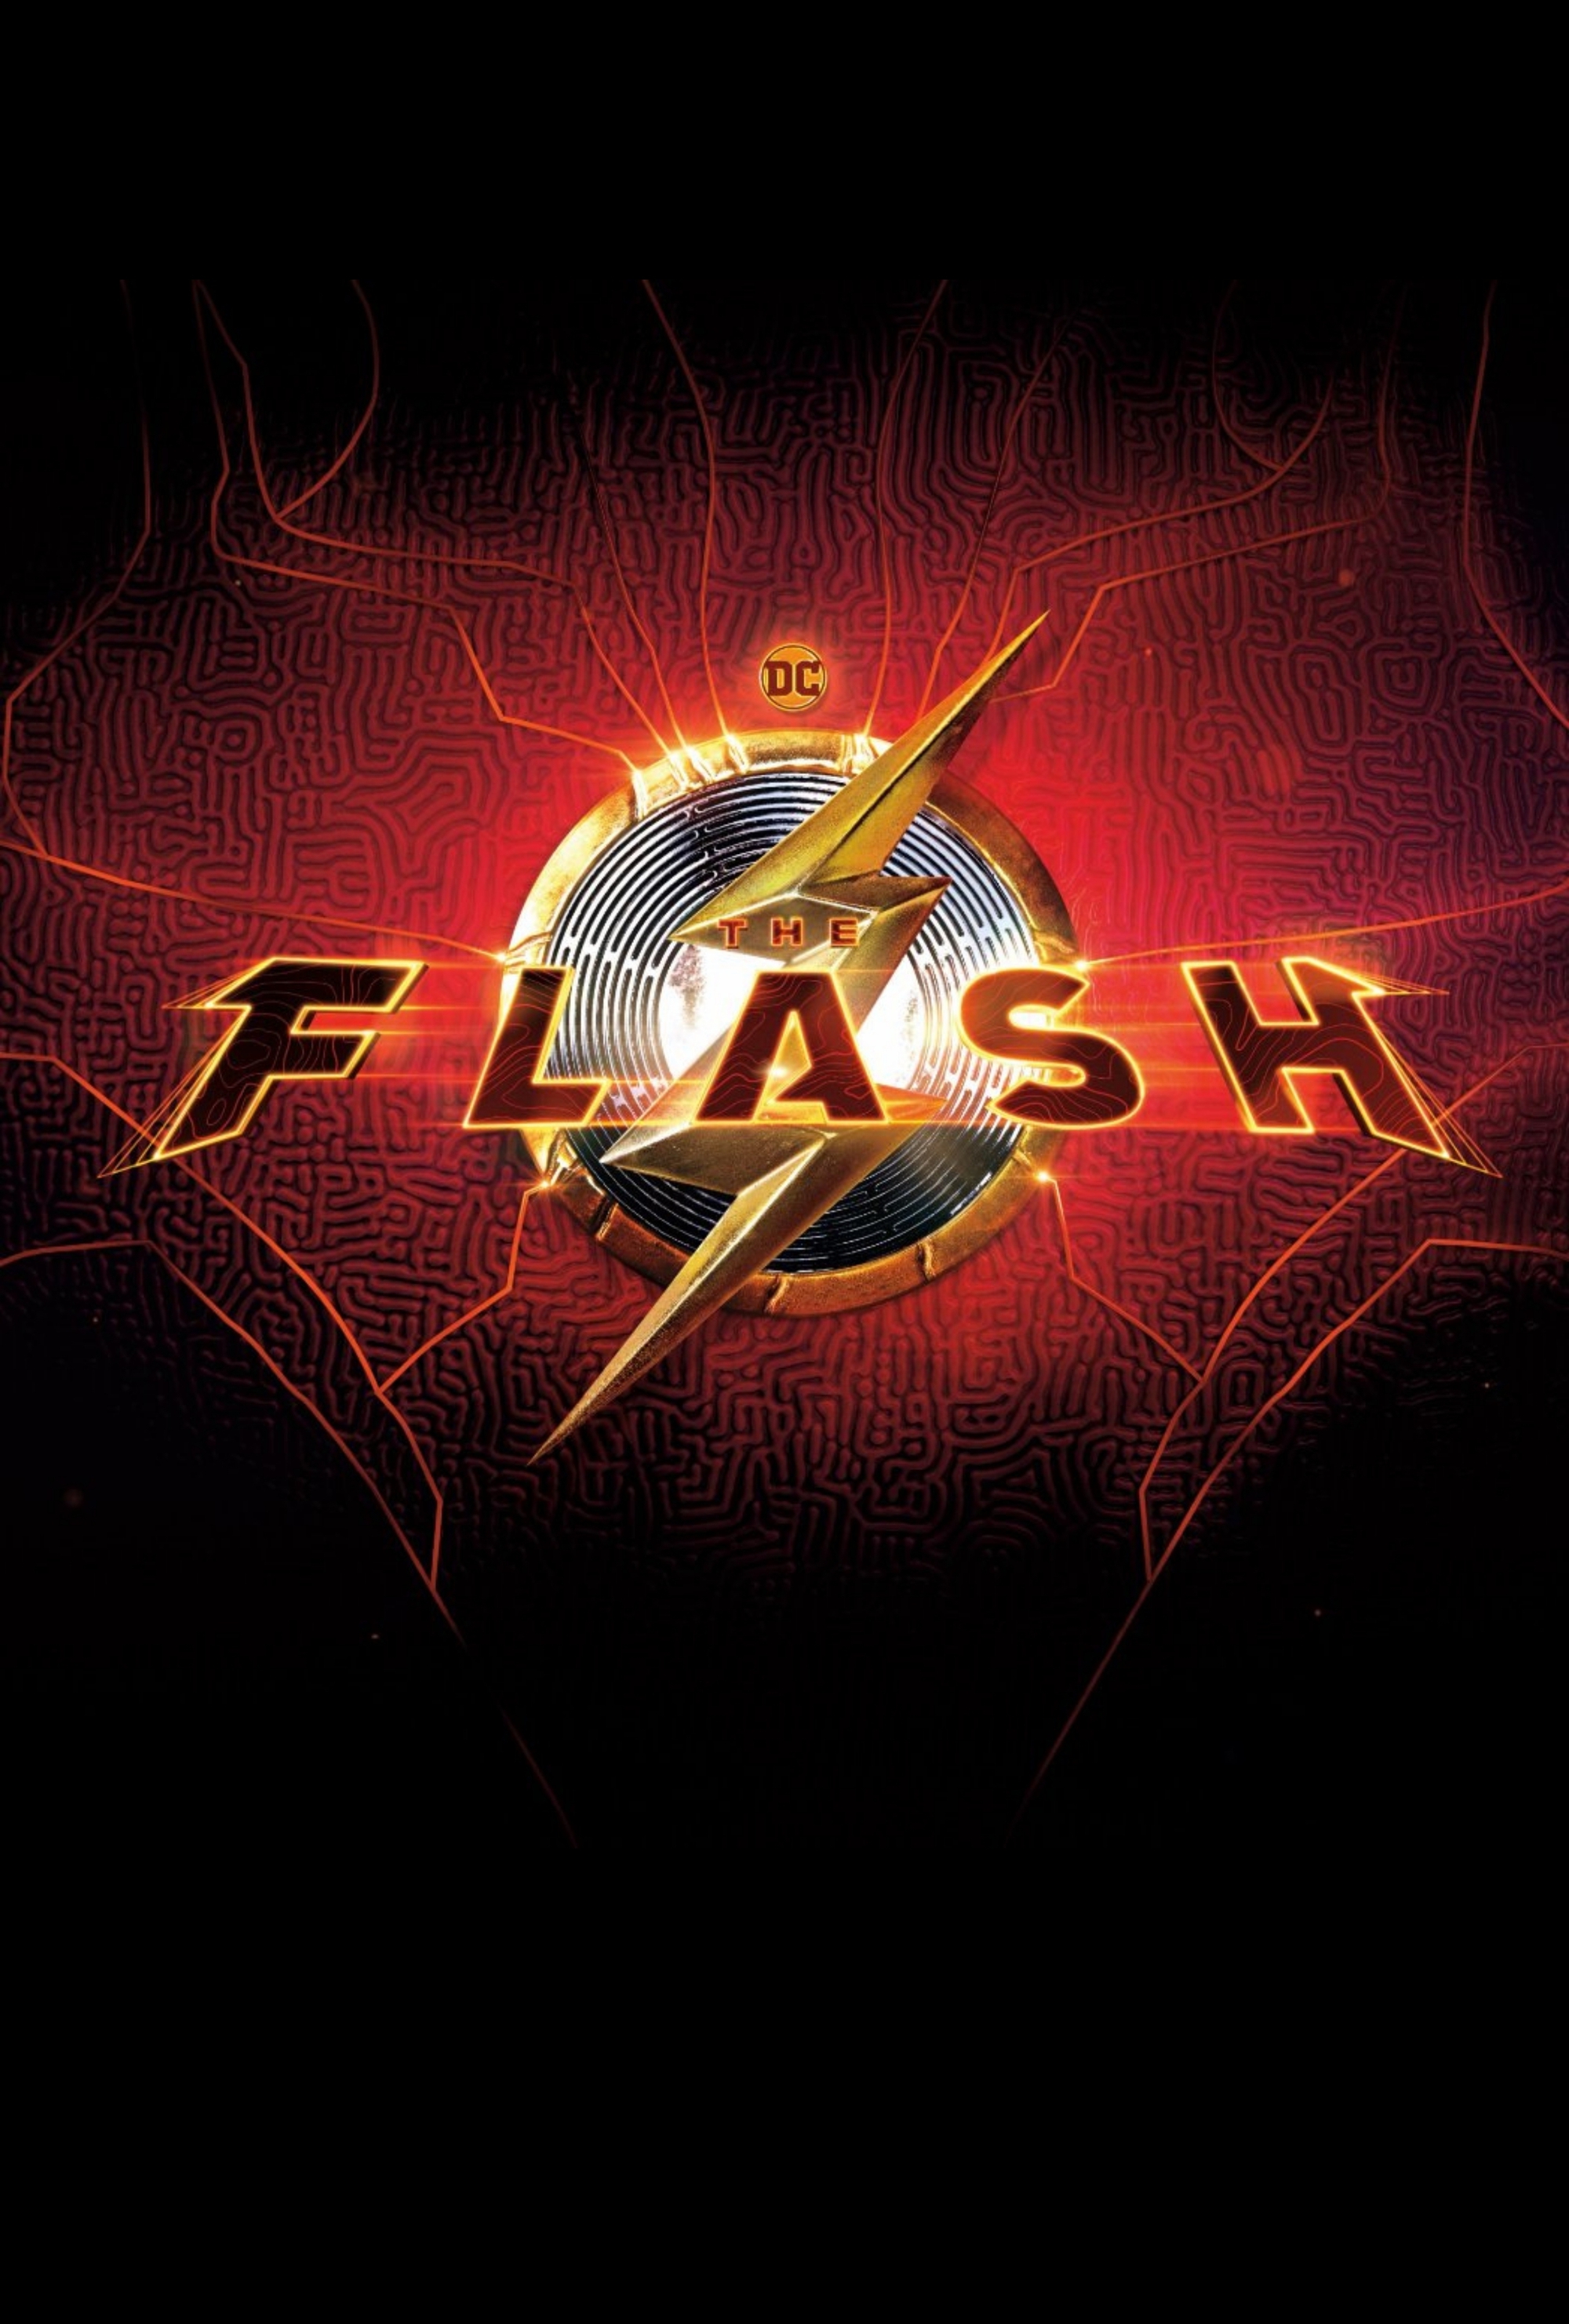 Stephen King thể hiện tình yêu dành cho bộ phim DC The Flash